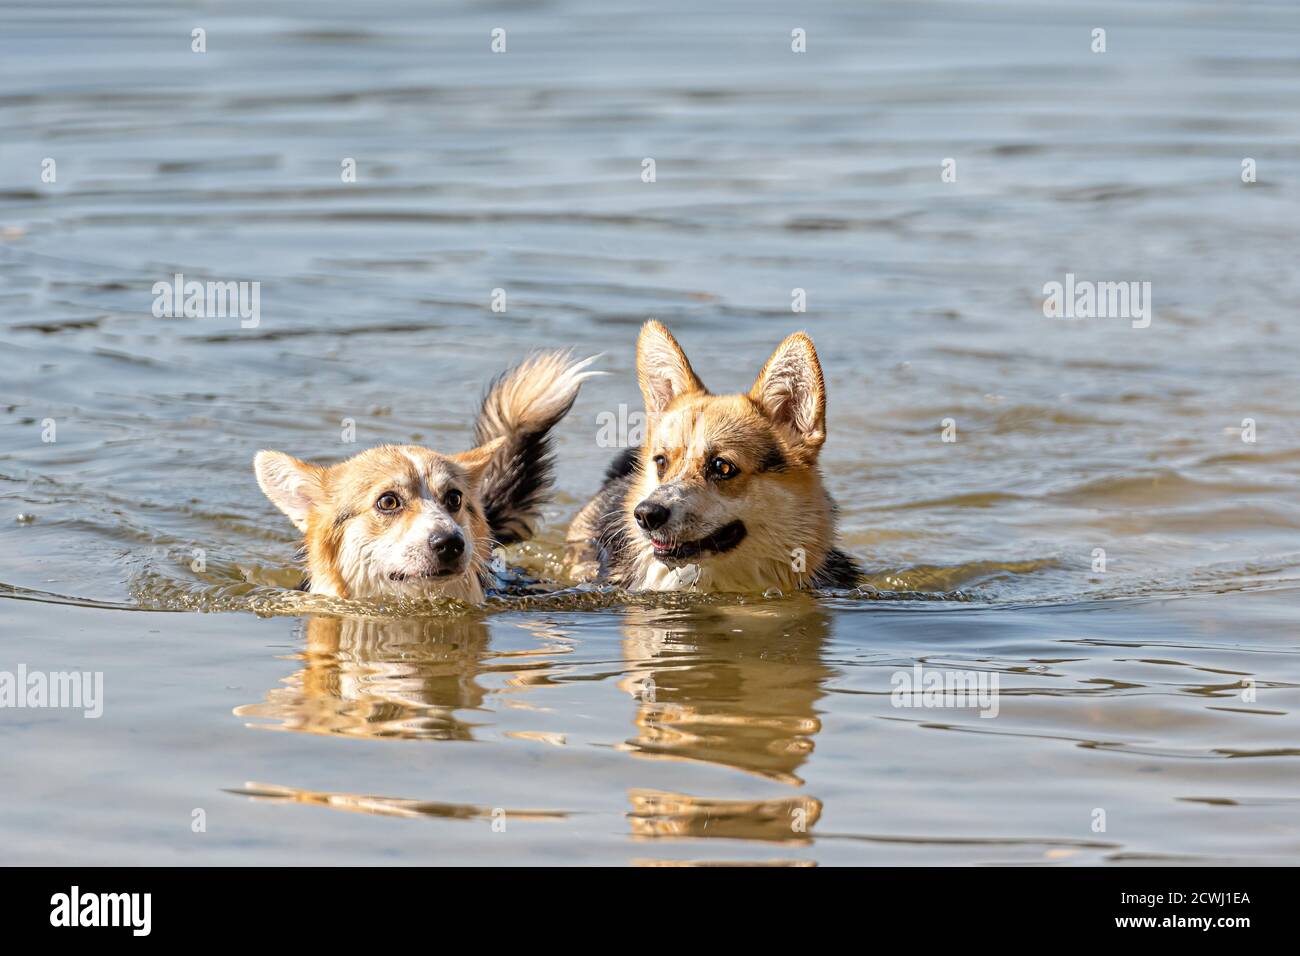 El perro de Welsh Corgi Pembroke nada en el lago y disfruta un día soleado Foto de stock